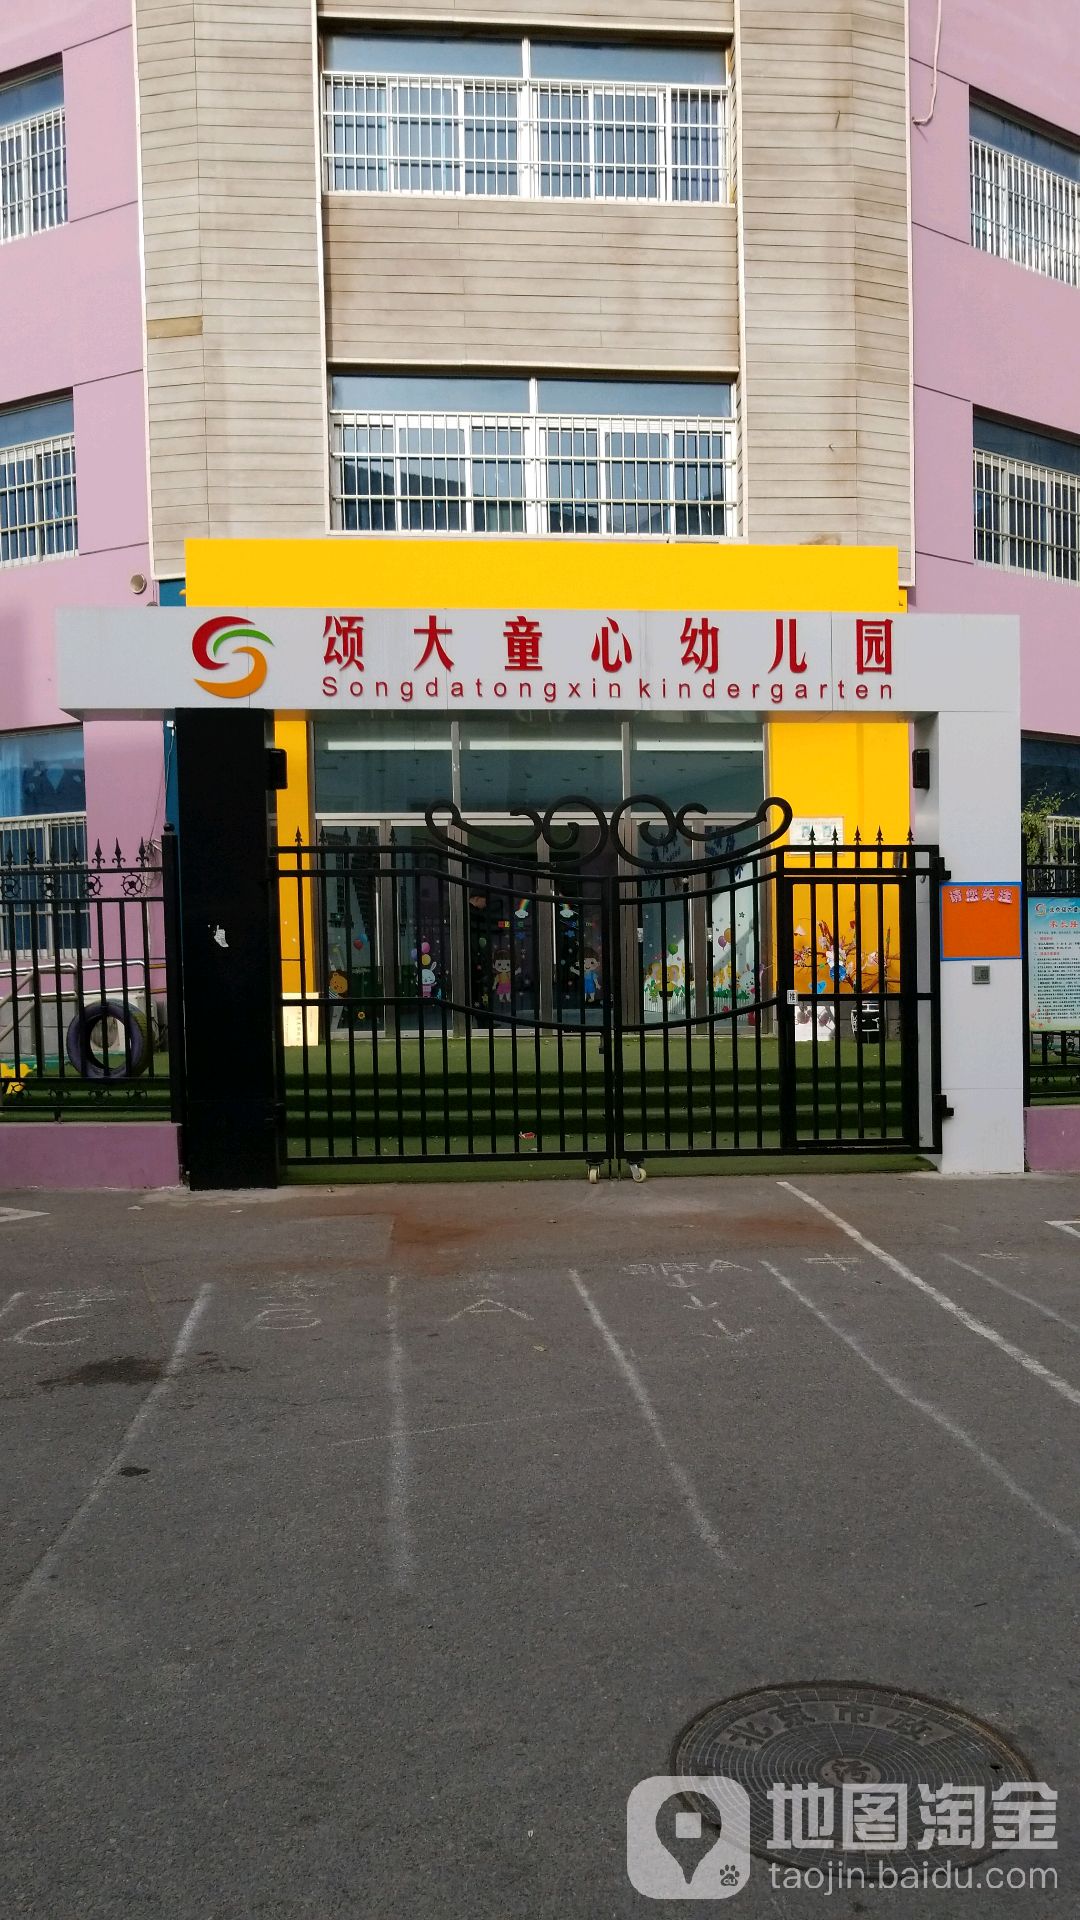 北京市海淀区颂大童心幼儿园的图片